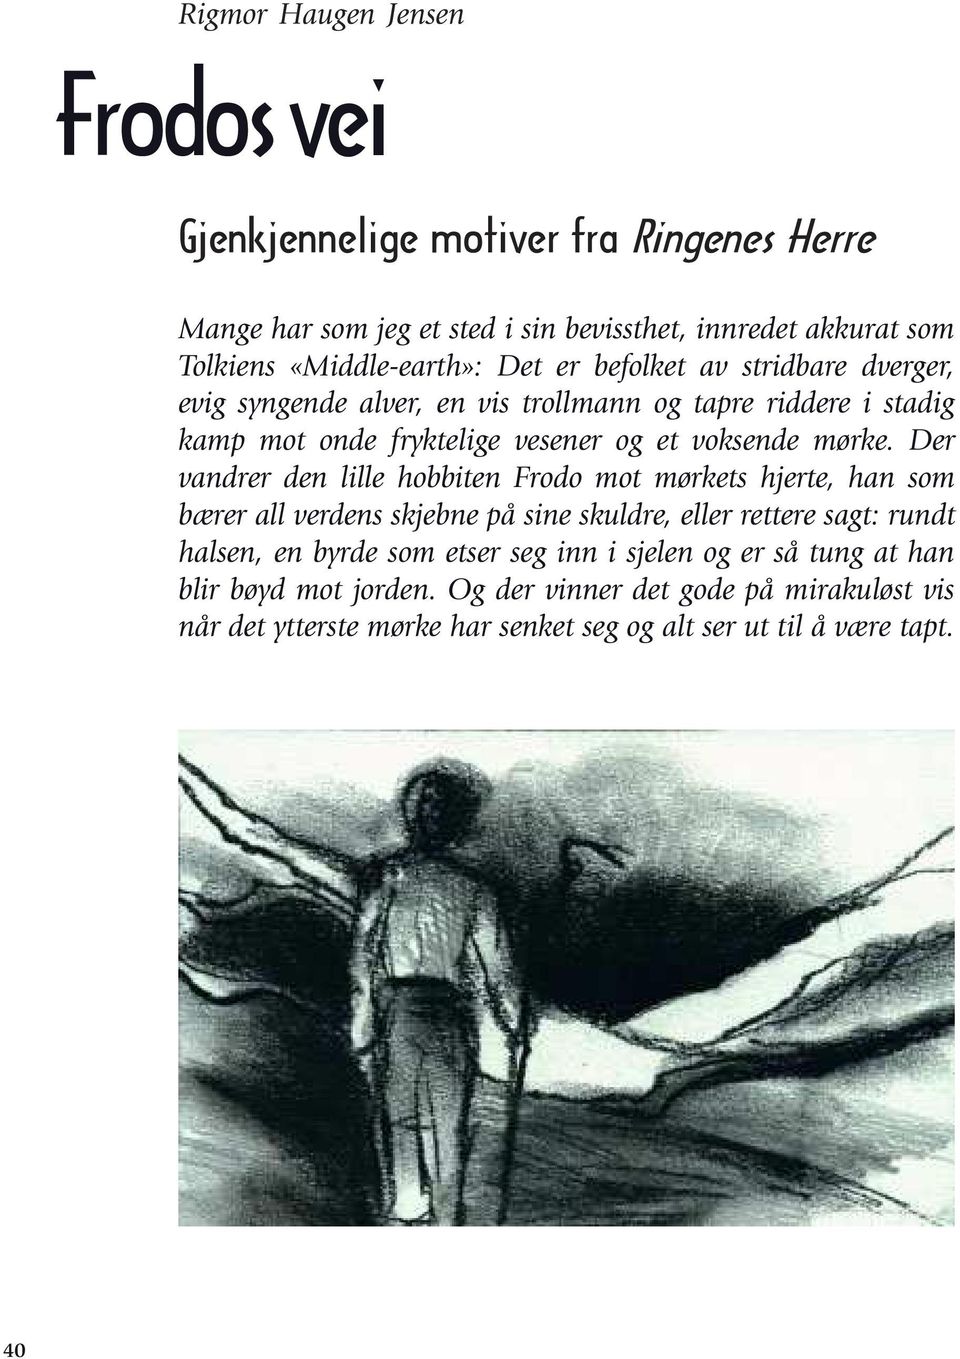 Frodos vei. Gjenkjennelige motiver fra Ringenes Herre. Rigmor Haugen Jensen  - PDF Gratis nedlasting